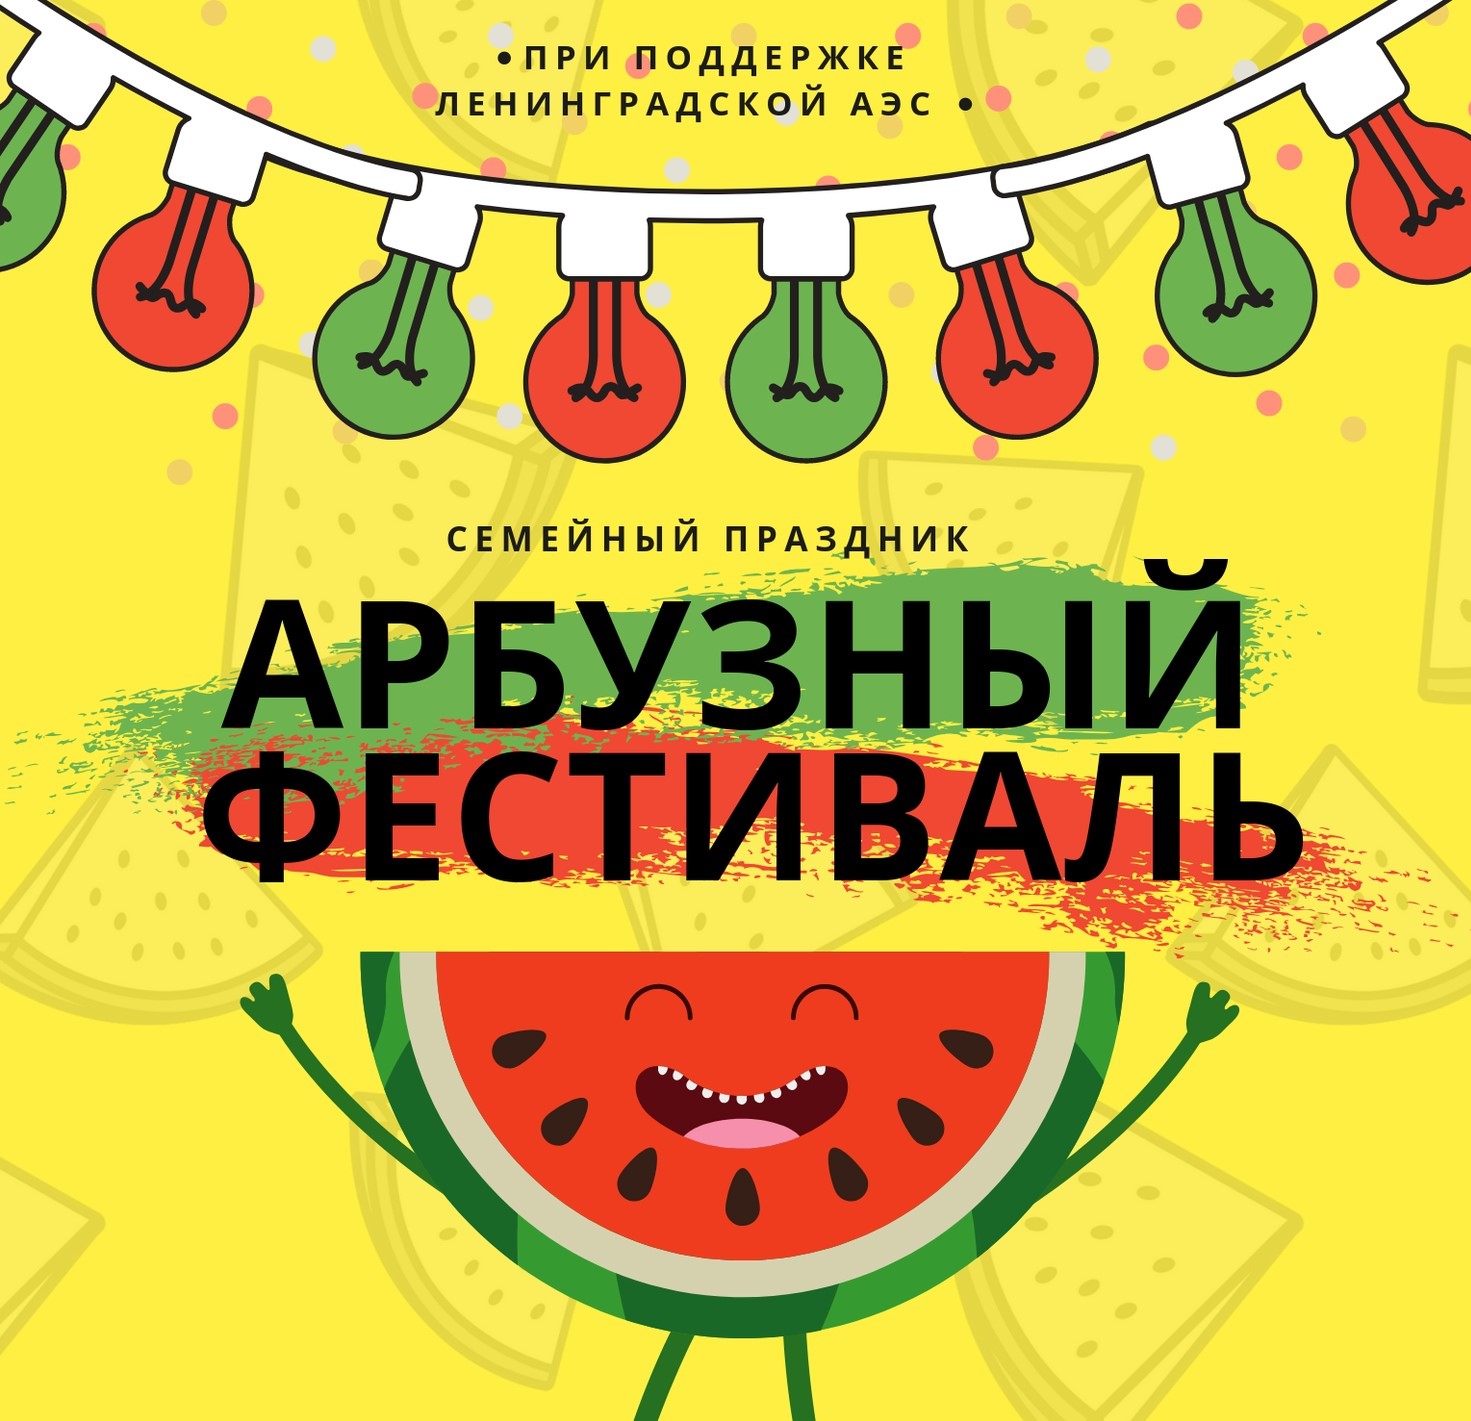 "Арбузный Фестиваль" в Сосновом Бору объединит активных горожан и любителей самой большой ягоды в мире